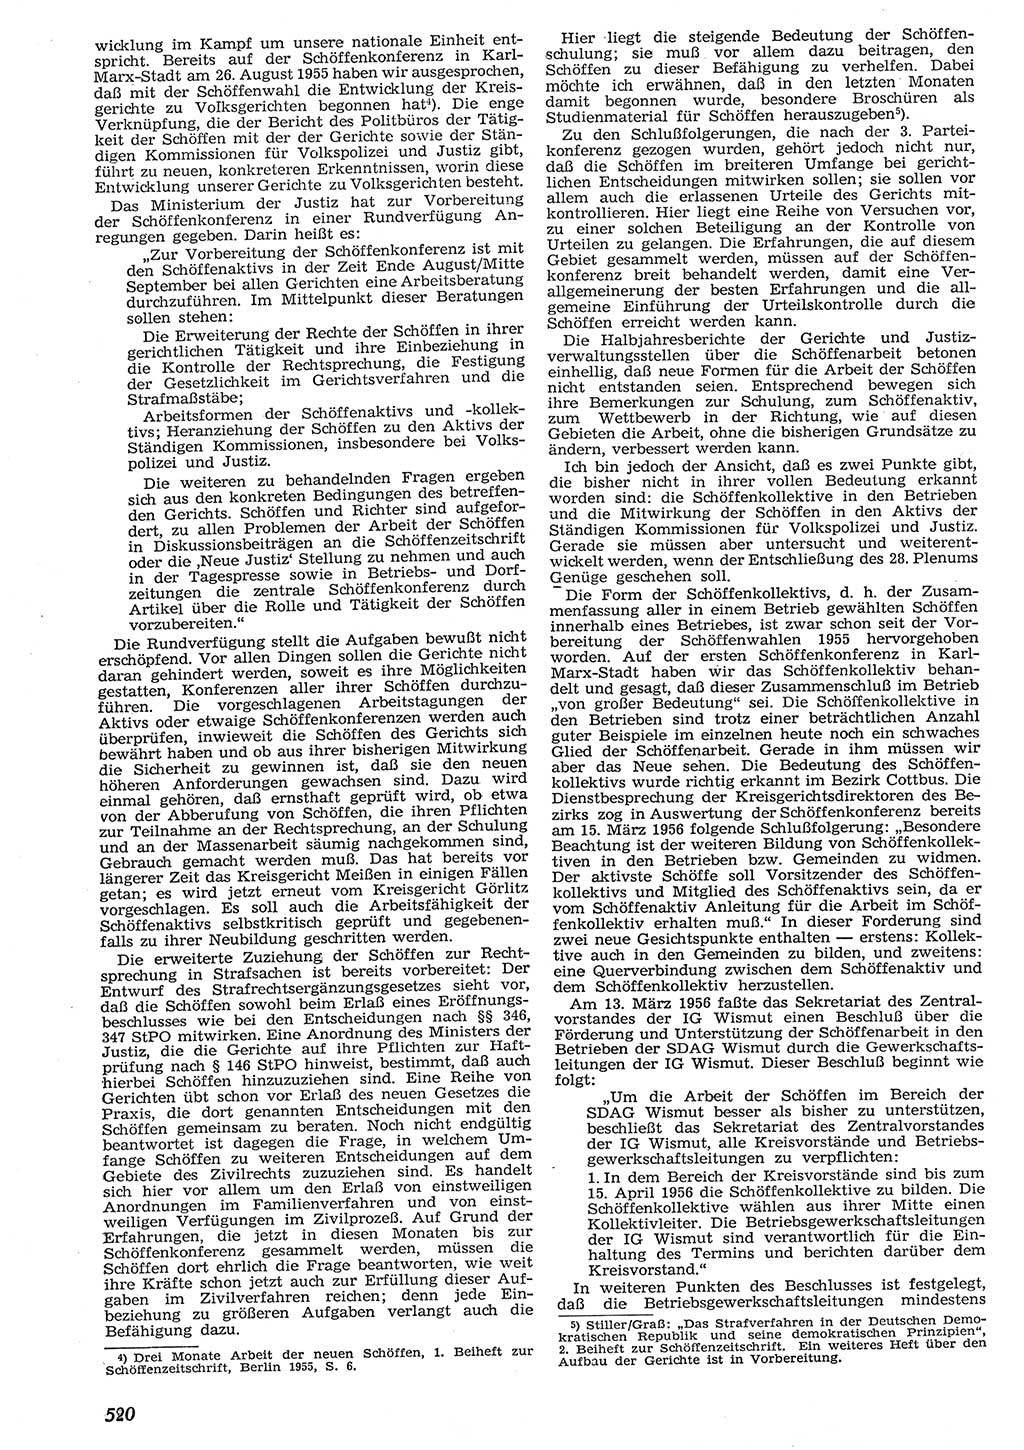 Neue Justiz (NJ), Zeitschrift für Recht und Rechtswissenschaft [Deutsche Demokratische Republik (DDR)], 10. Jahrgang 1956, Seite 520 (NJ DDR 1956, S. 520)